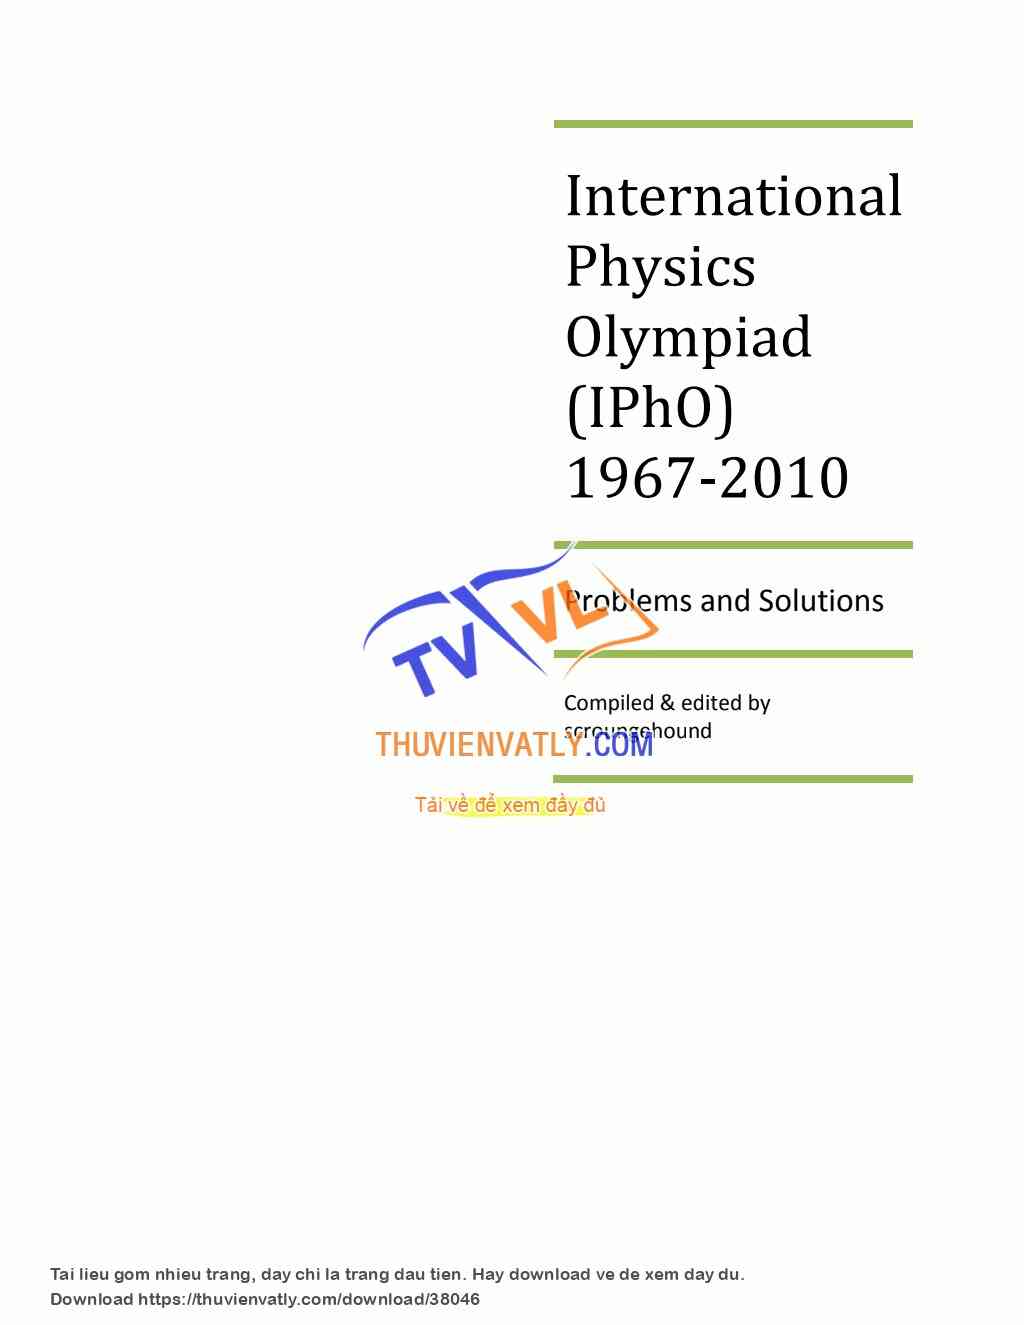 International Physics Olympiad 1967-2010